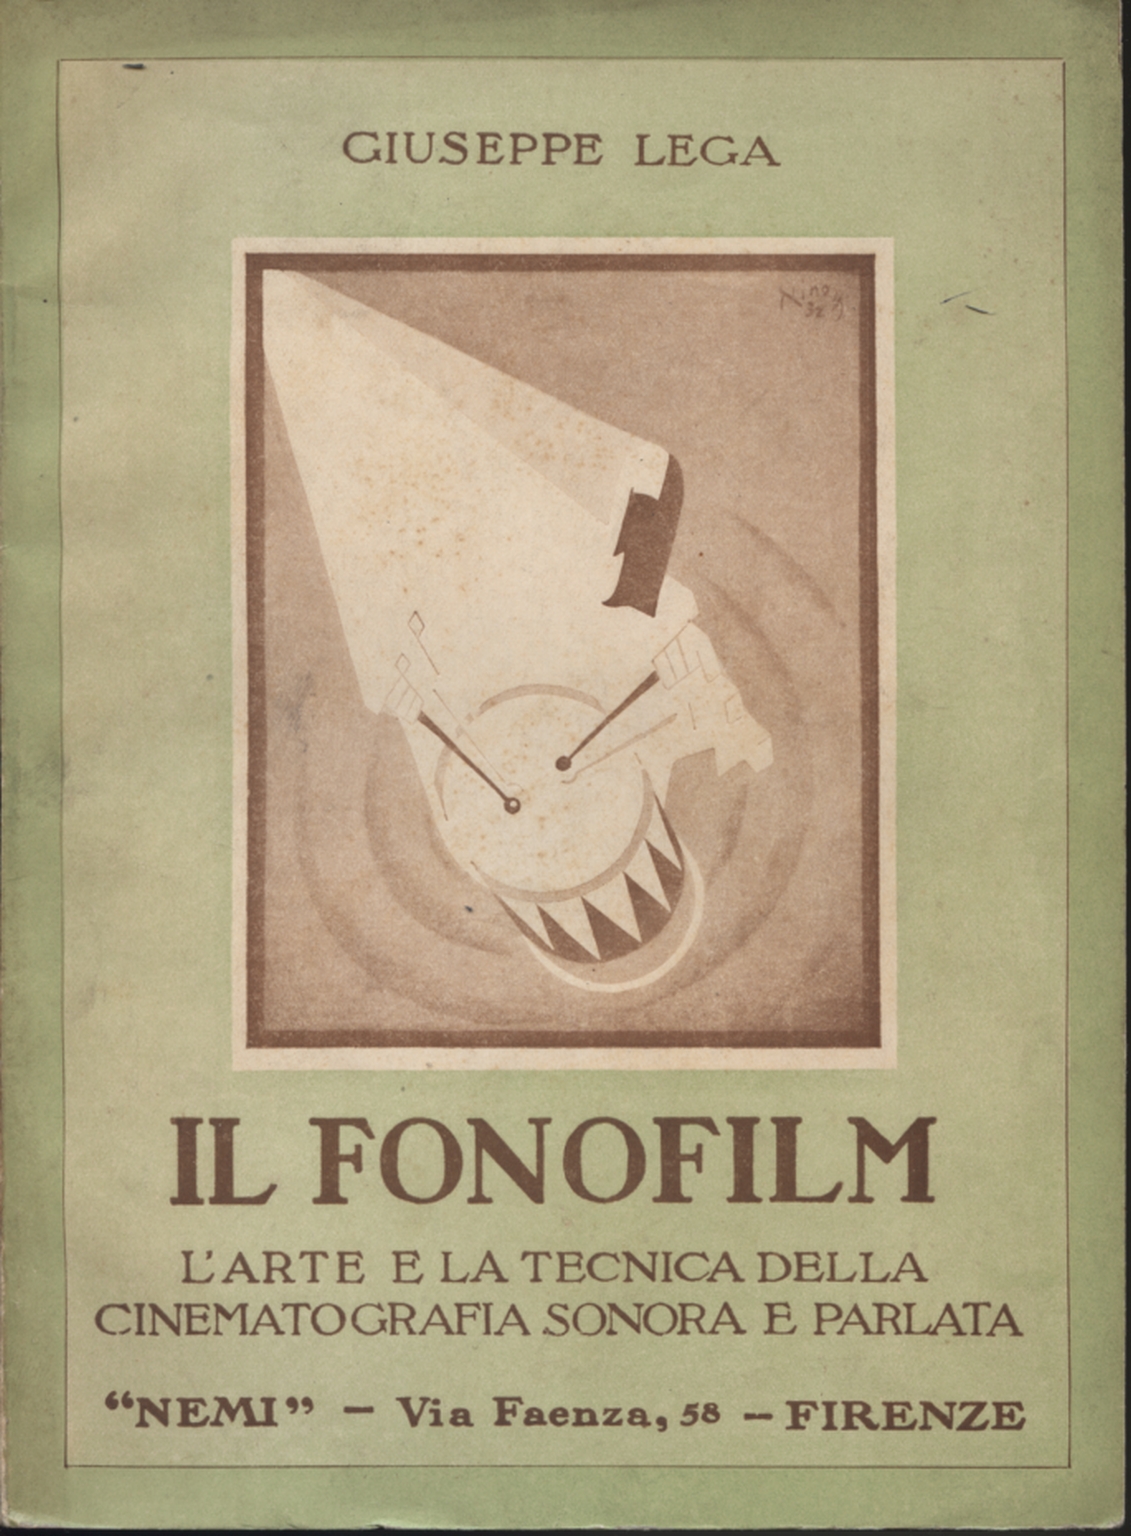 Le phonofilm, Giuseppe Lega